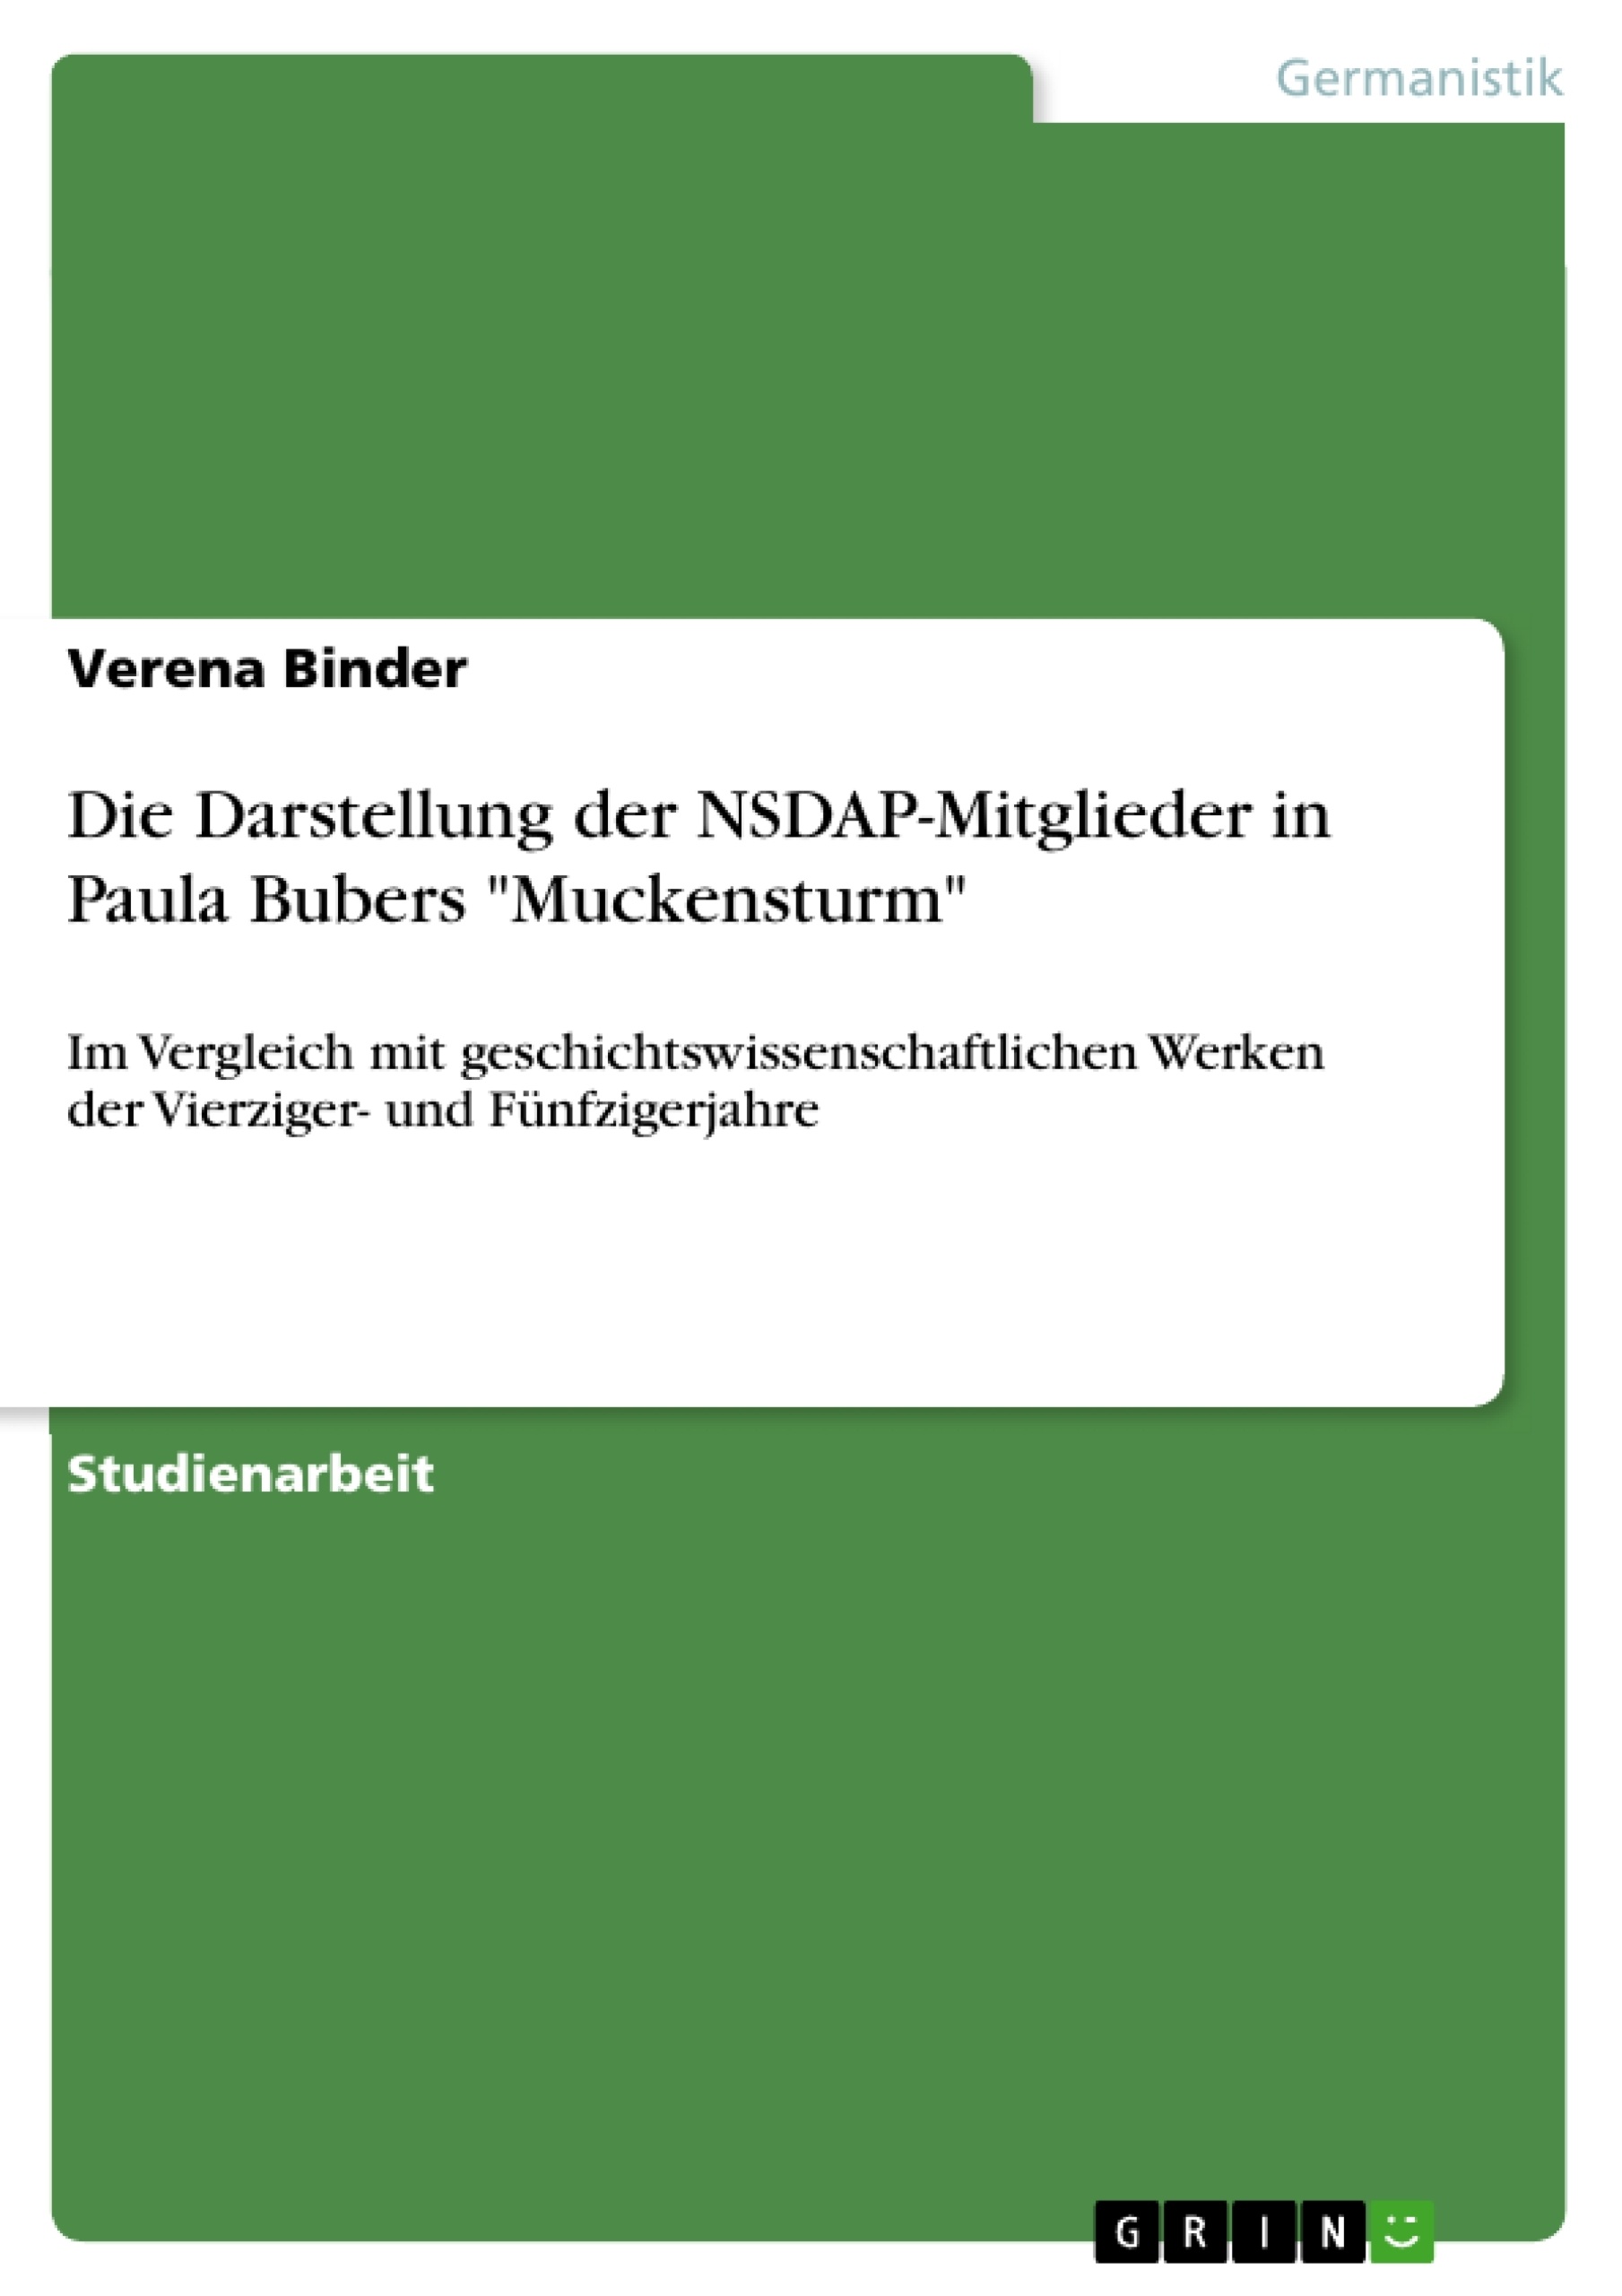 Title: Die Darstellung der NSDAP-Mitglieder in Paula Bubers "Muckensturm"